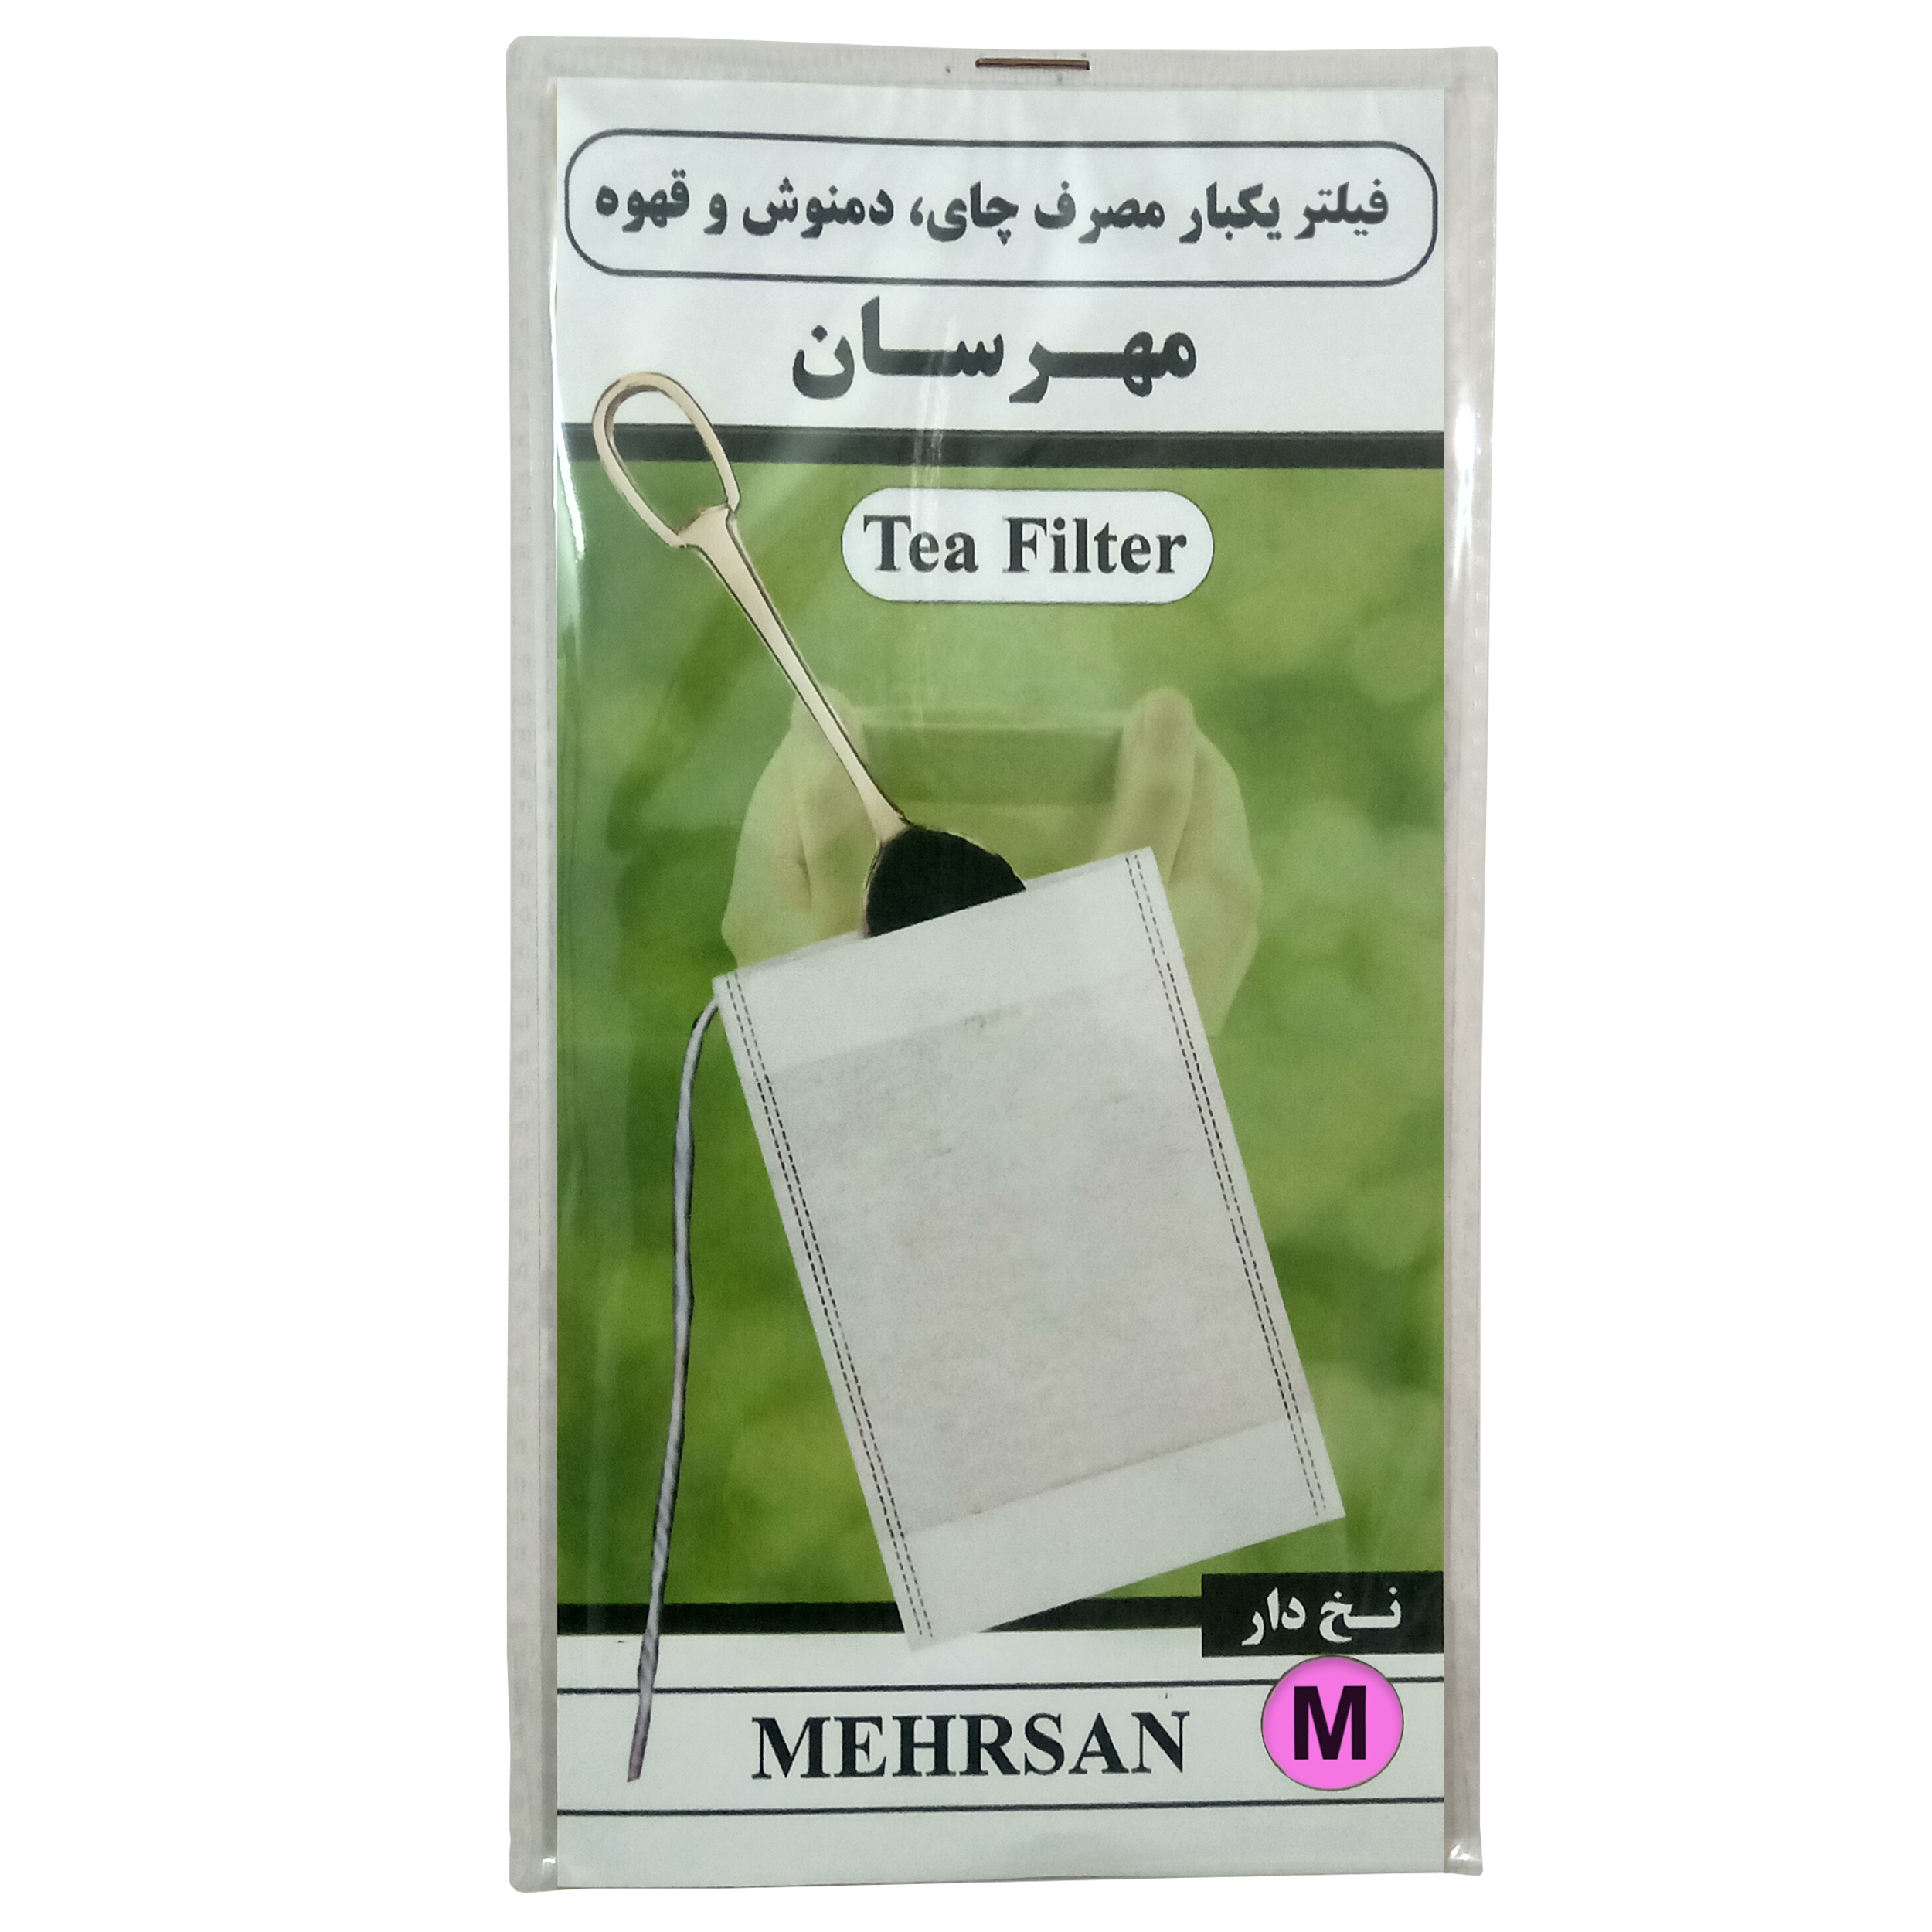  فیلتر چای مهرسان مدل M-30 بسته 30 عددی